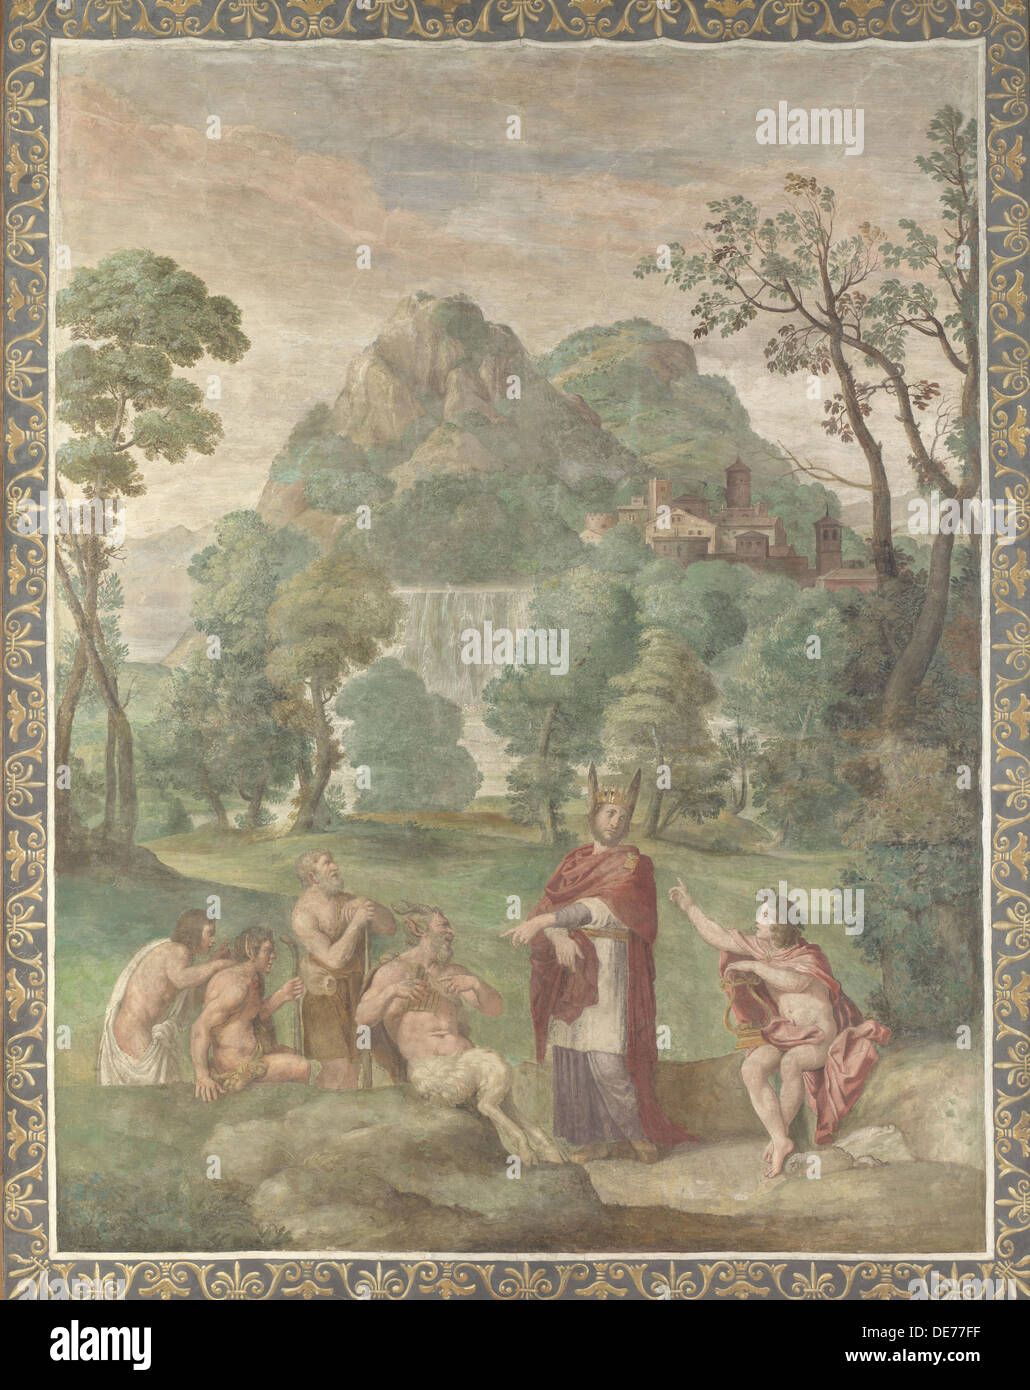 Le jugement de Midas (fresque de la Villa Aldobrandini), 1617-1618. Artiste : Domenichino (1581-1641) Banque D'Images